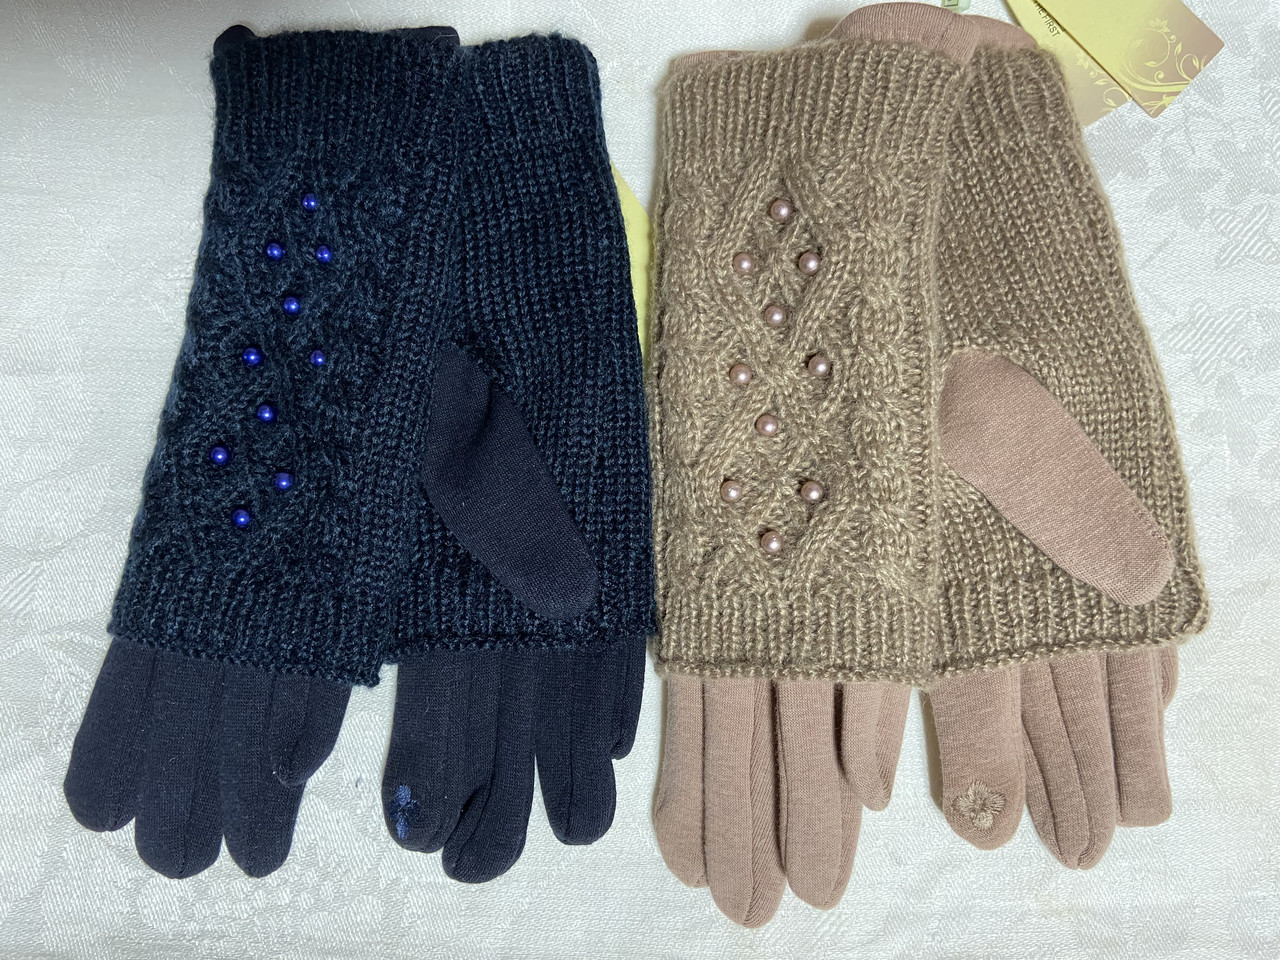 Жіночі комплекти рукавичка + рукавиця сенсор для телефона.бежевий і синій